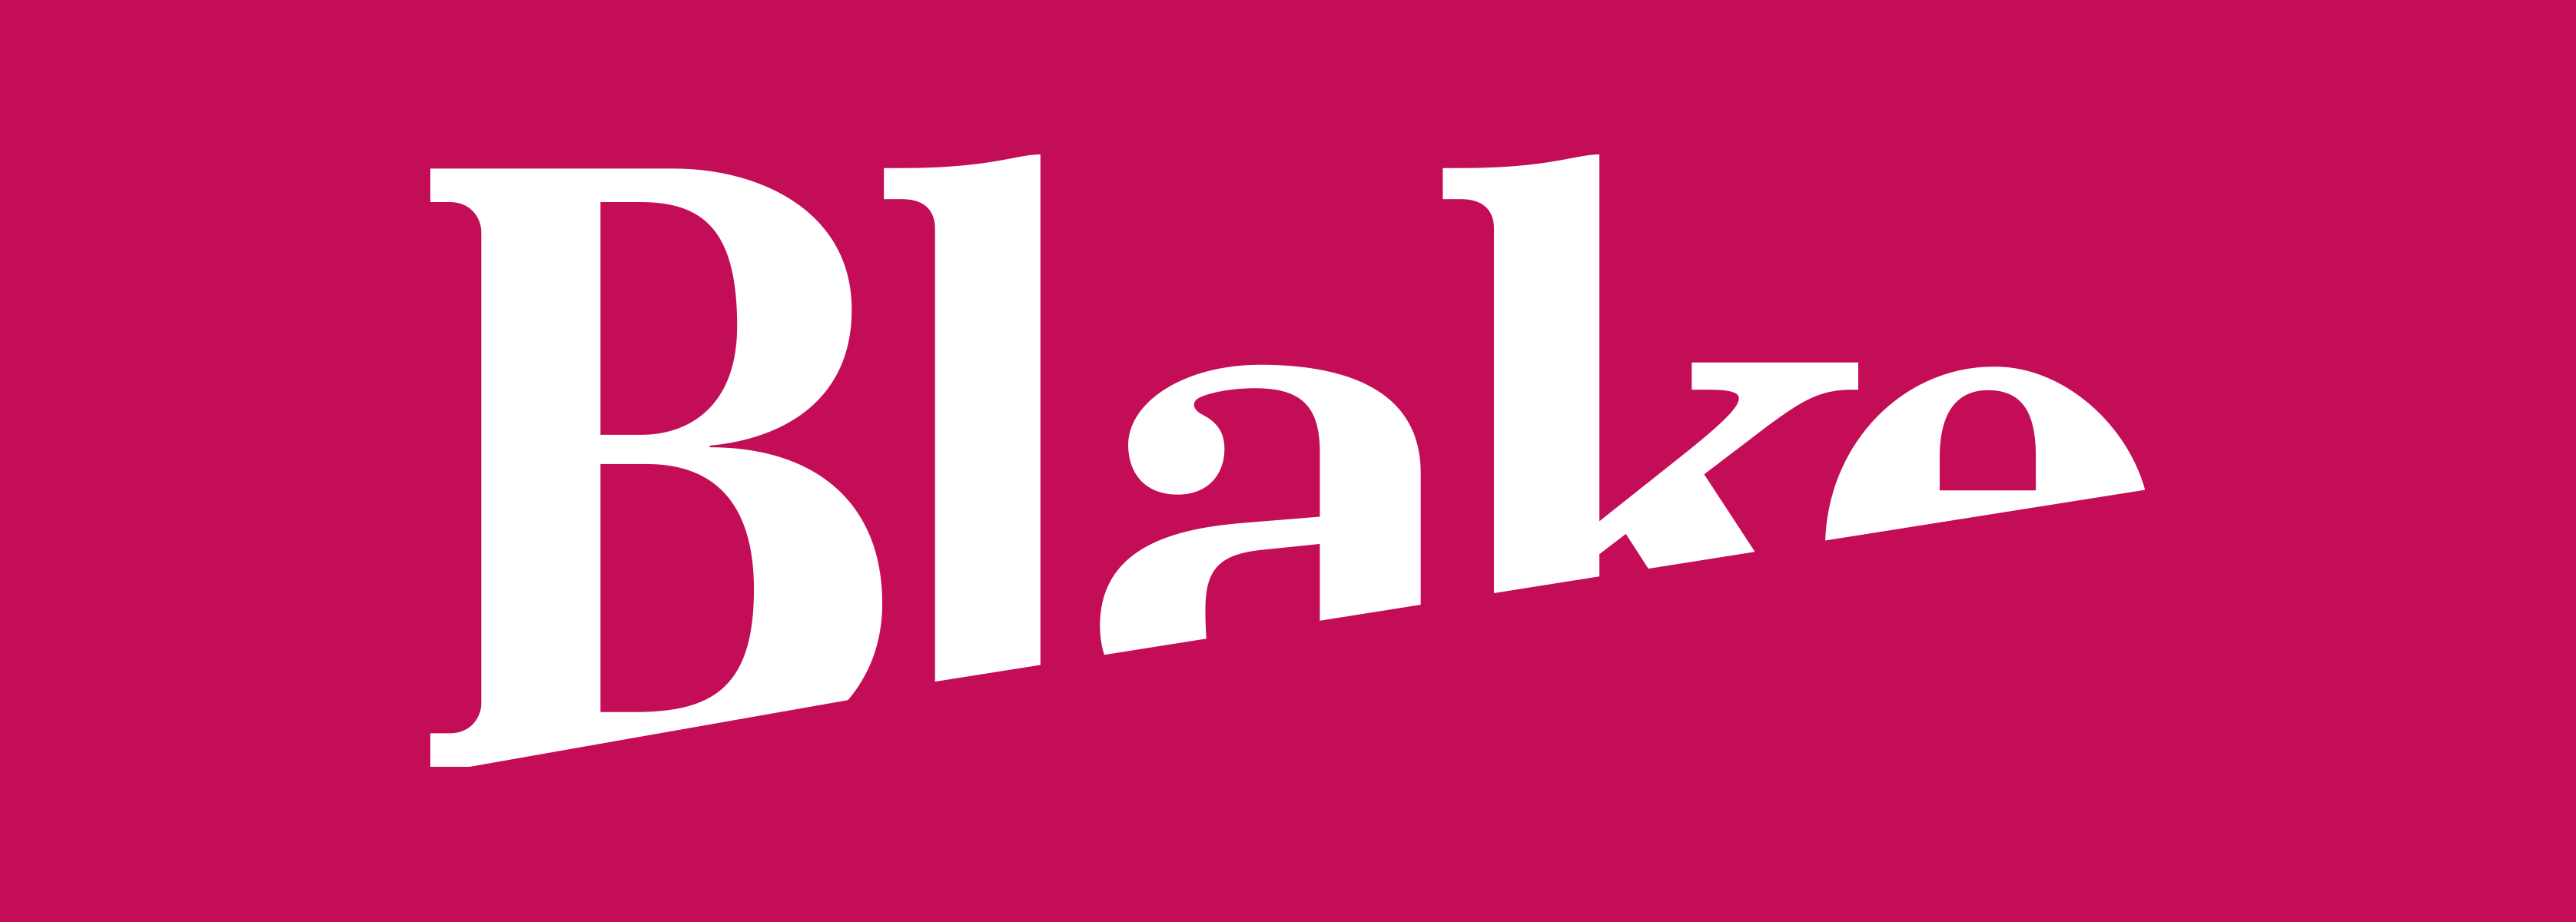 Blake Logo - Blake Envelopes